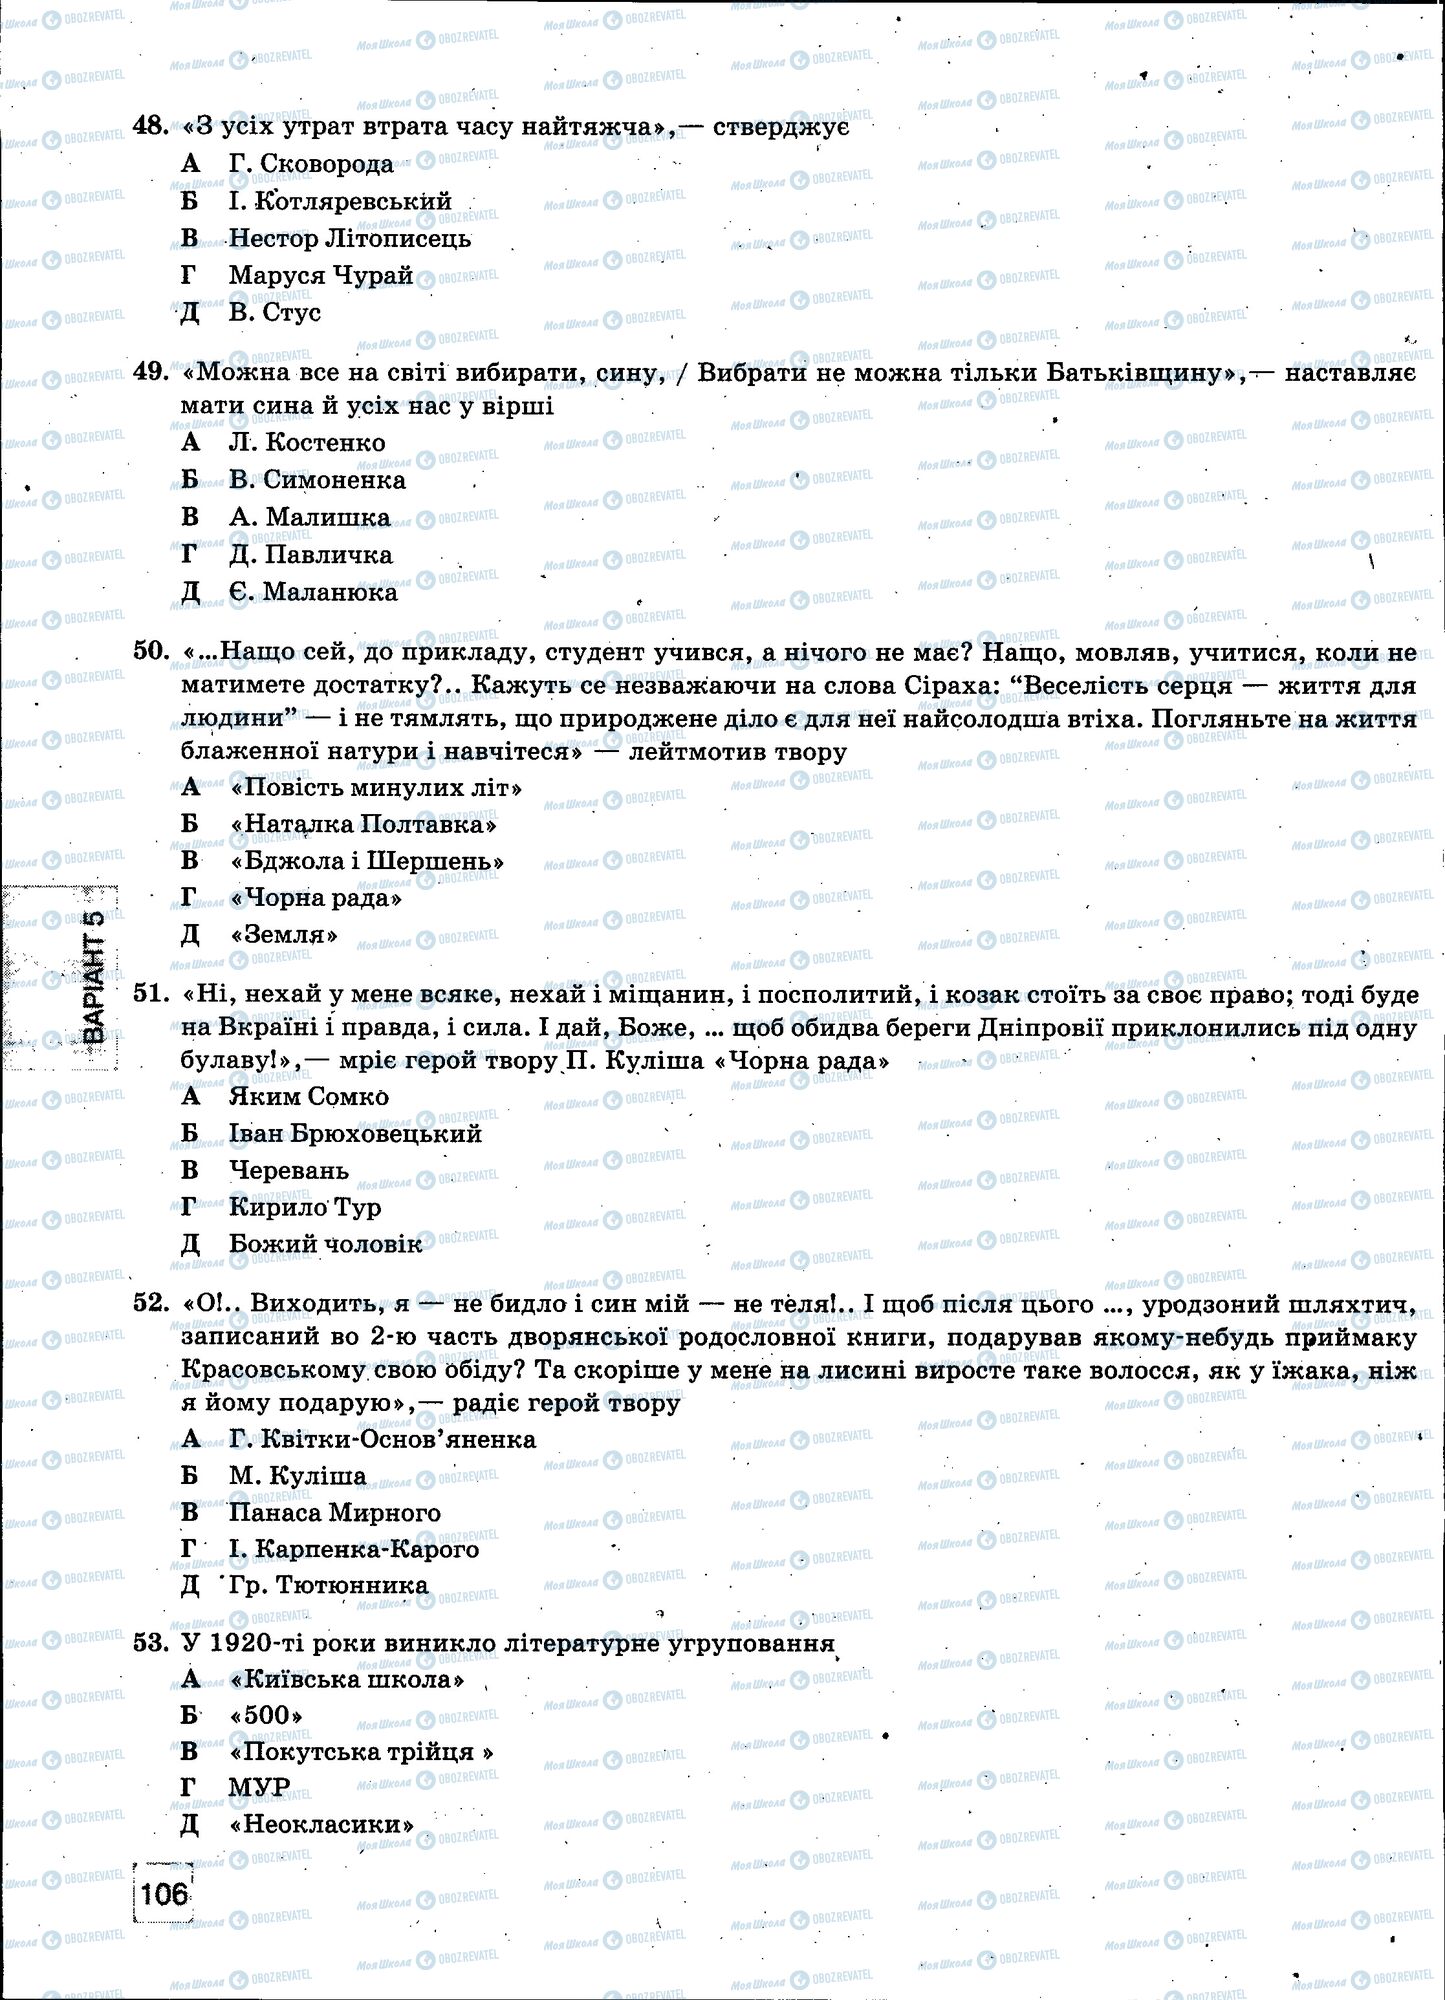 ЗНО Укр мова 11 класс страница 106